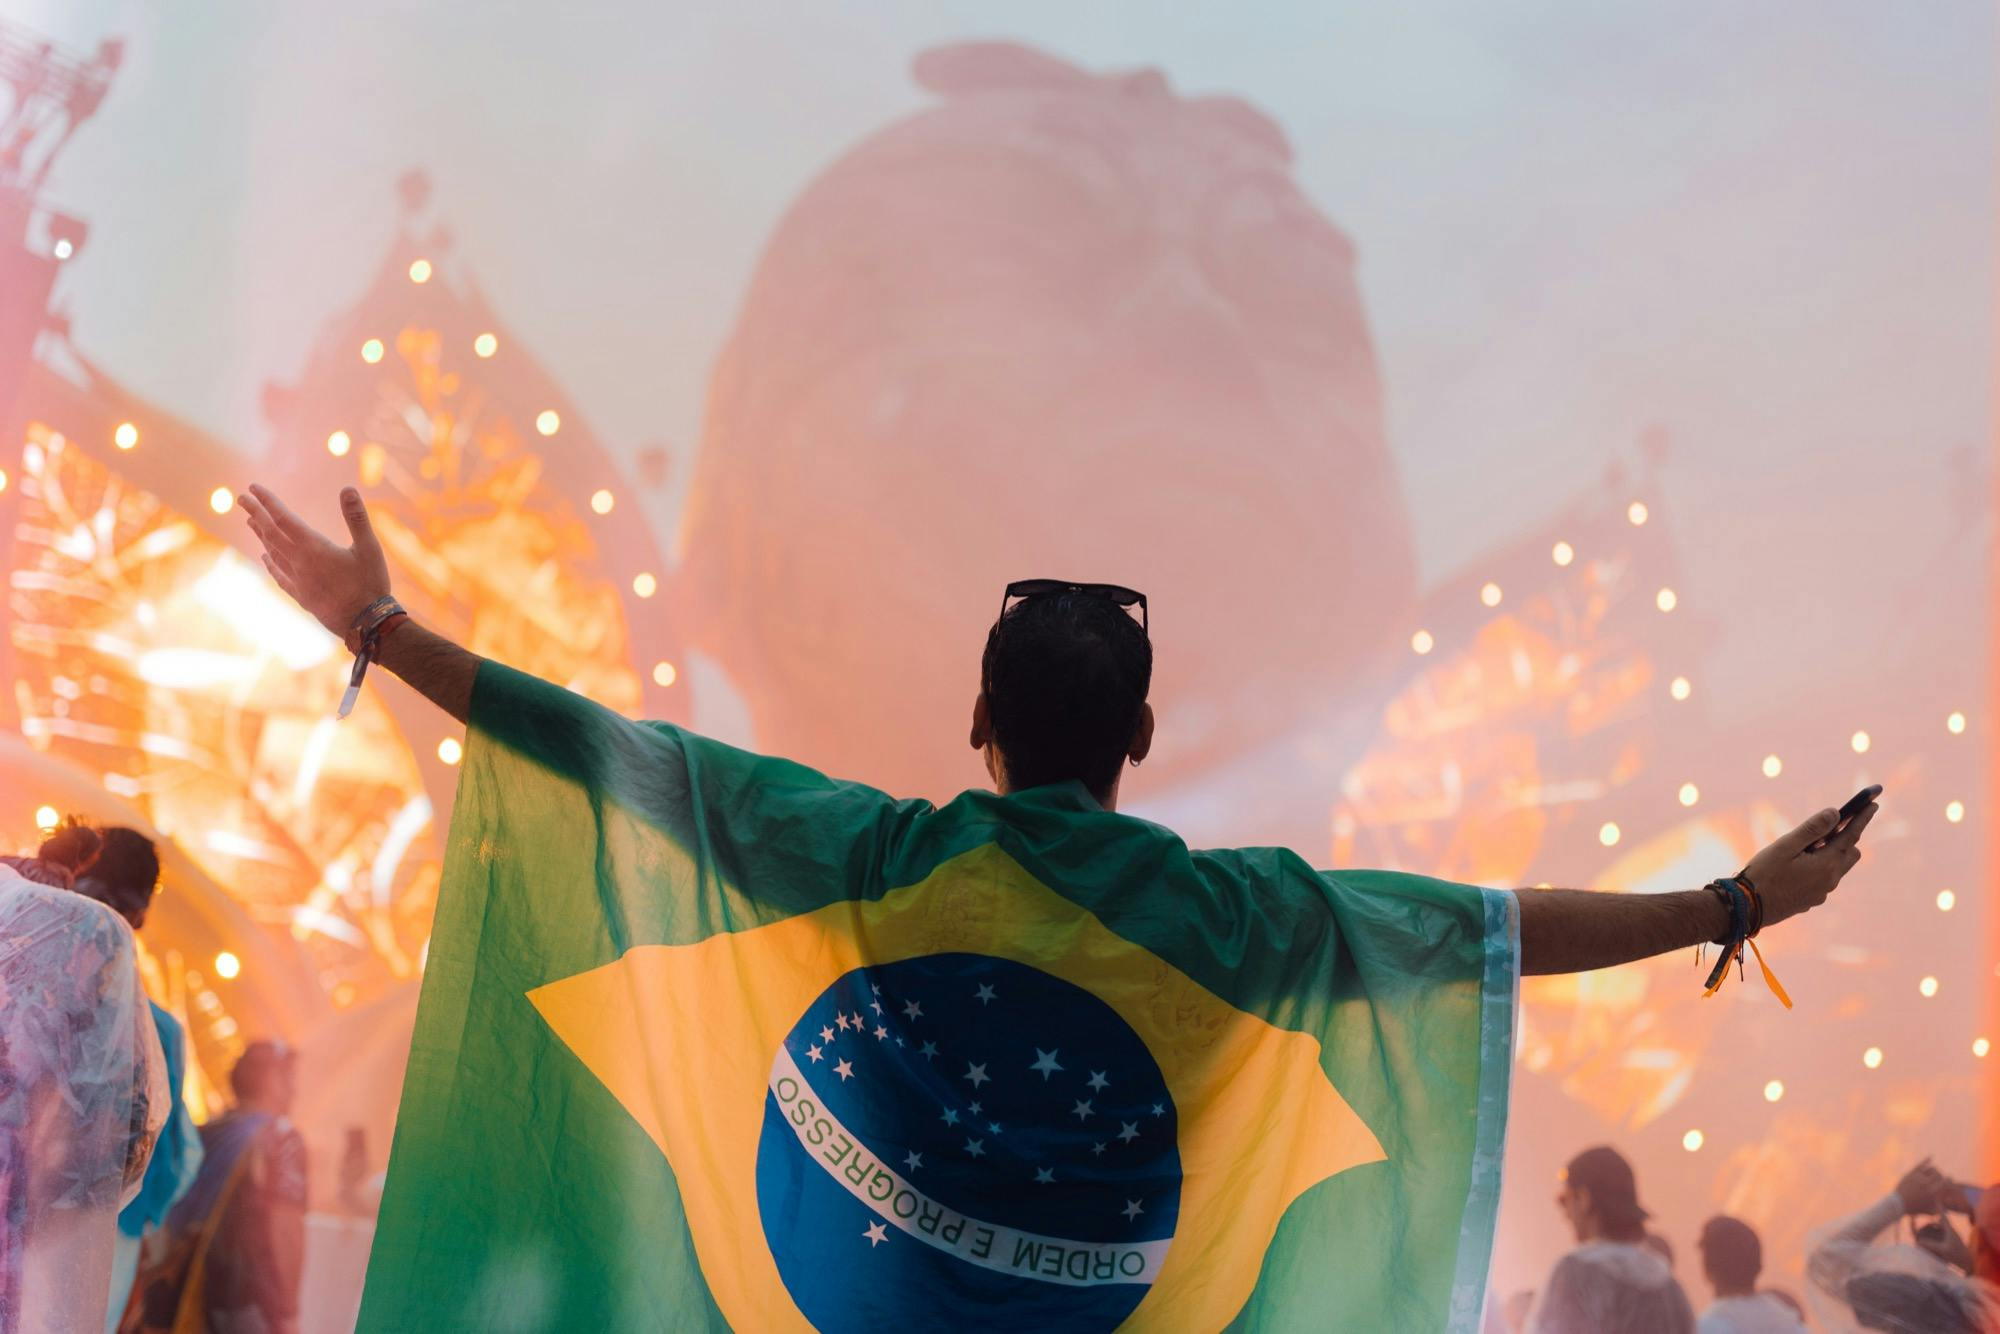 Tomorrowland Today 2023  Brasil 2023 by Tomorrowland - Issuu